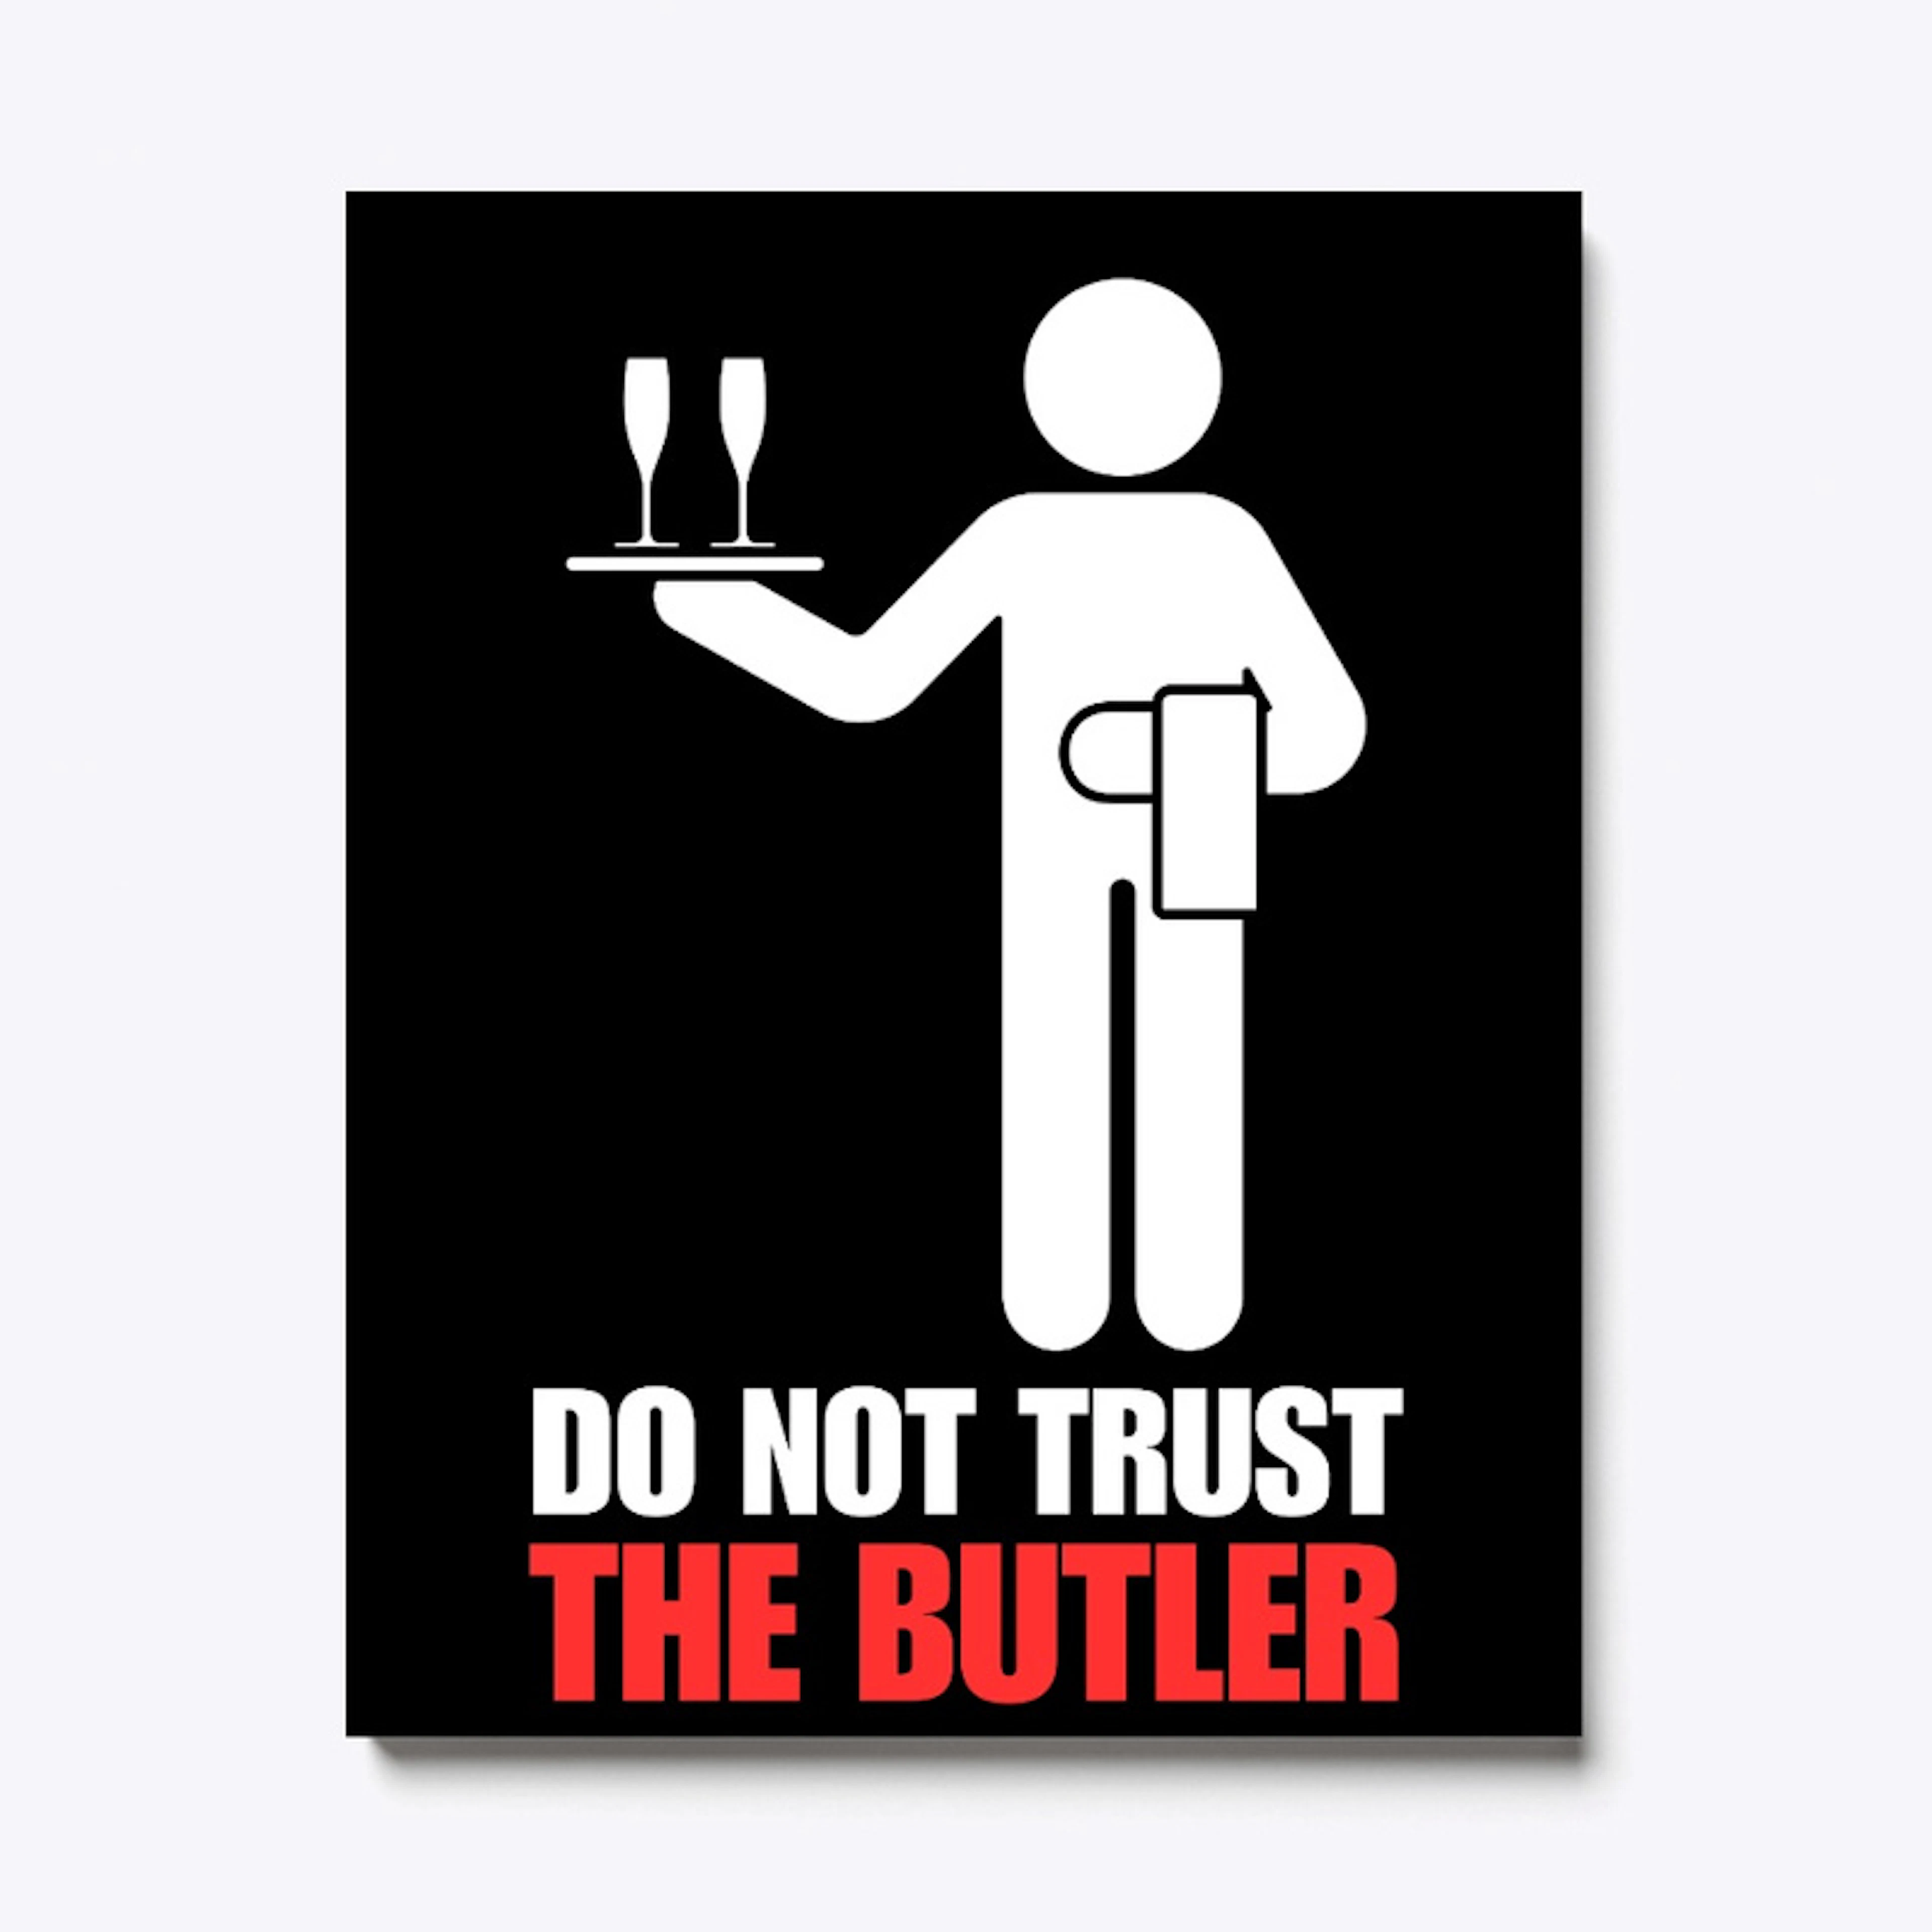 DO NOT TRUST THE BUTLER!